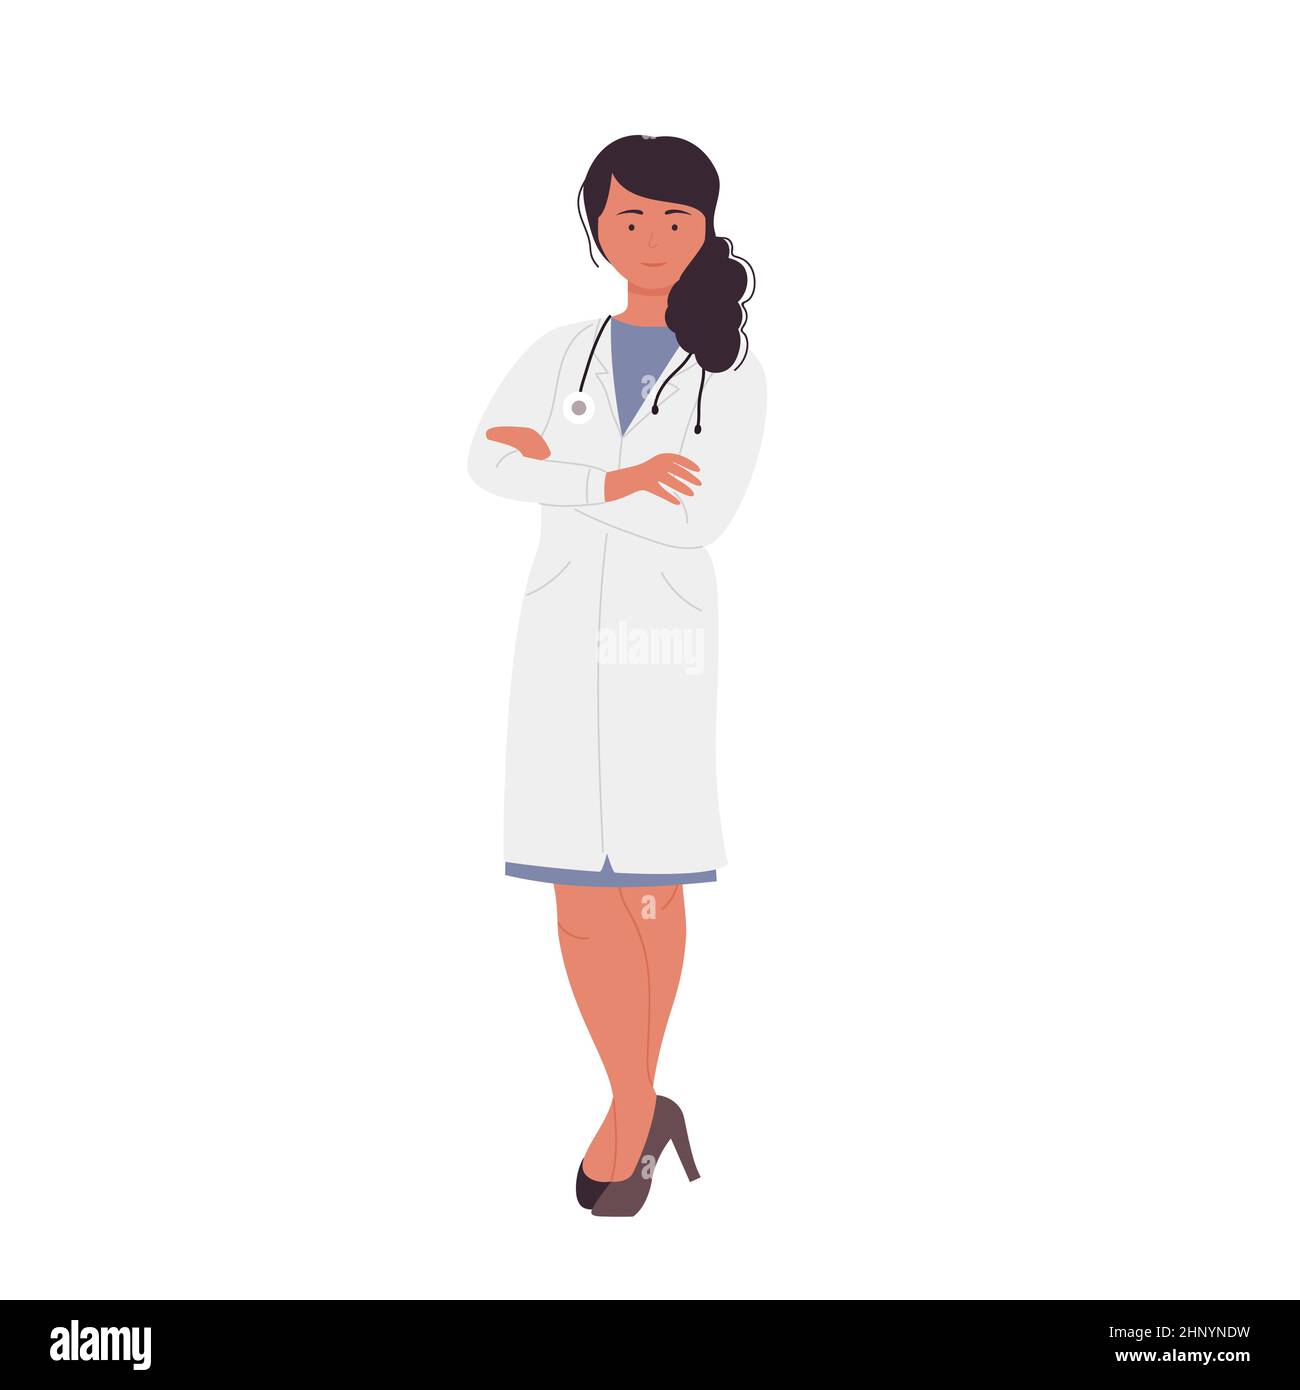 Elegante dunkelhaarige medizinische Assistentin Krankenschwester. Cartoon-Vektorgrafik für Krankenhauspflege- und Gesundheitsspezialisten Stock Vektor